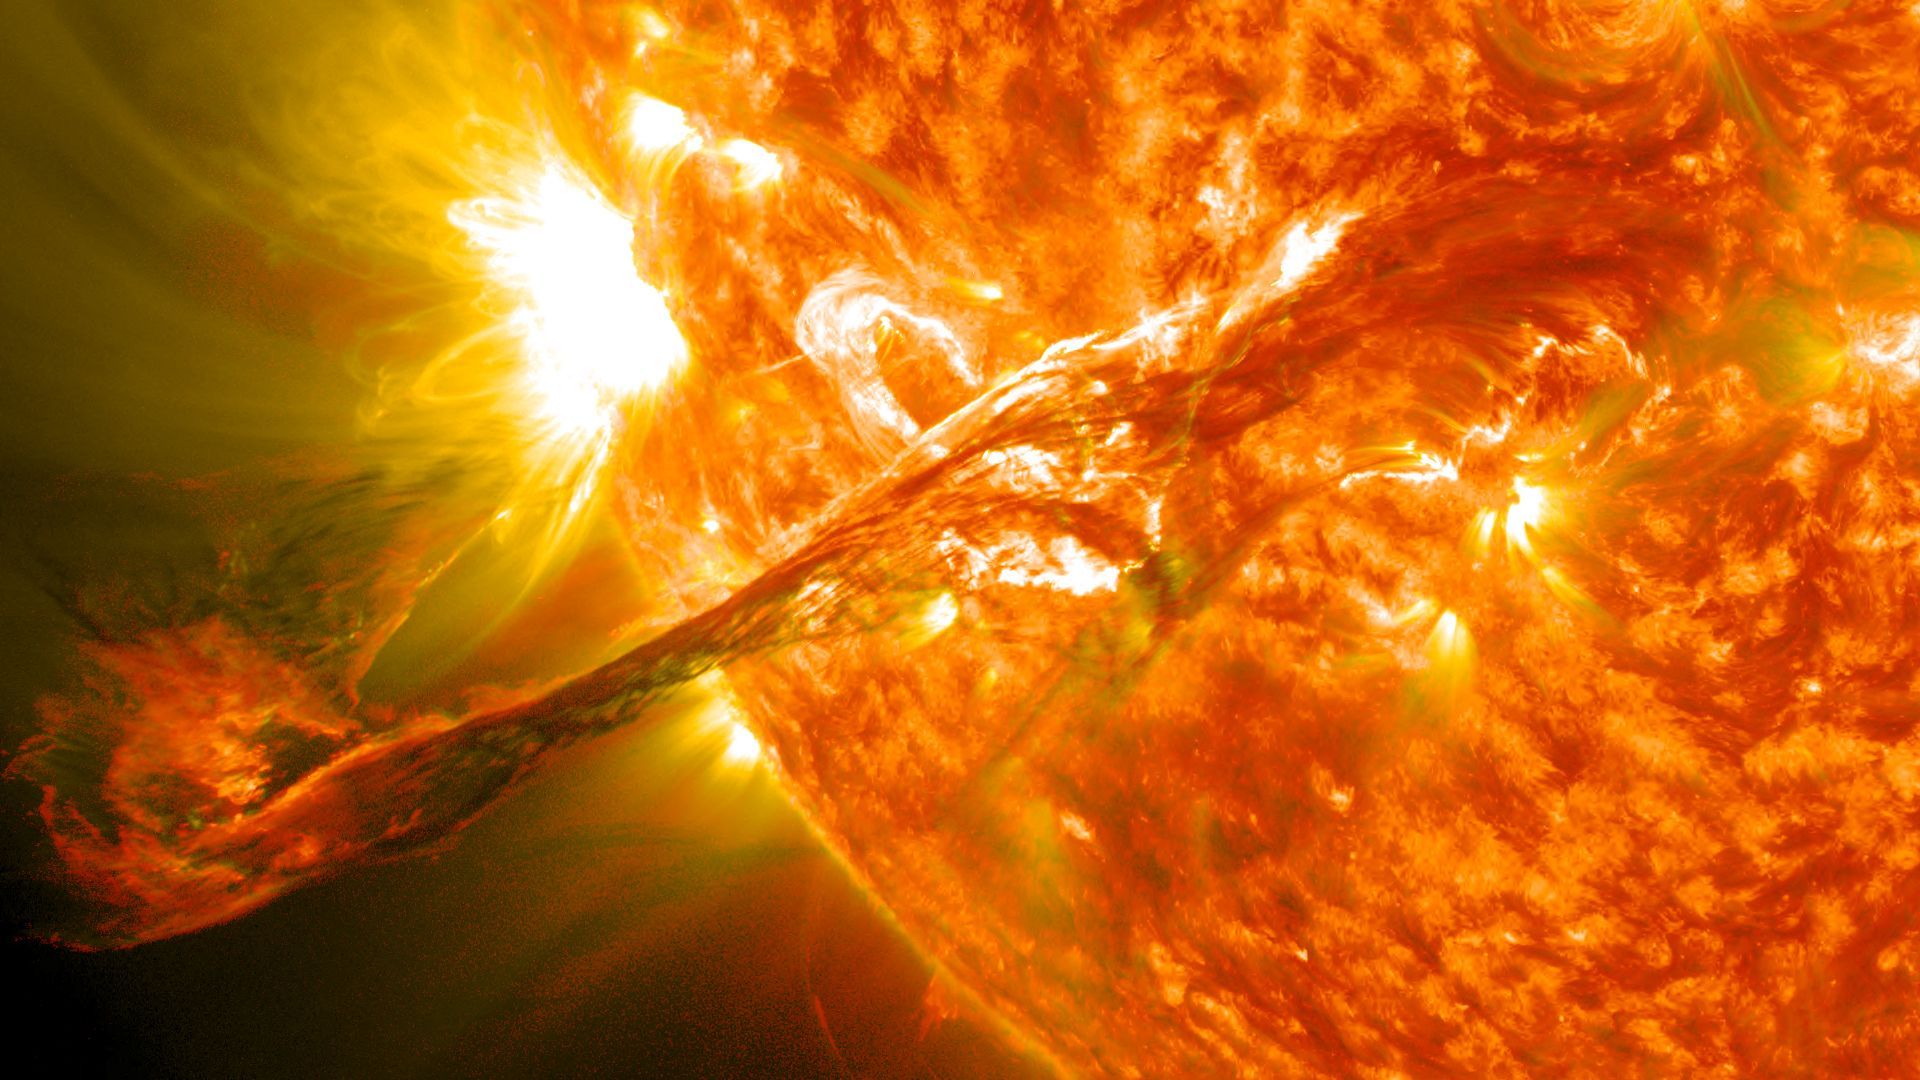 Vue rapprochée d’une protubérance géante, éjectée du Soleil lors d’une éruption solaire le 31/08/2012 avec une vitesse d’expansion de 1500km/s 